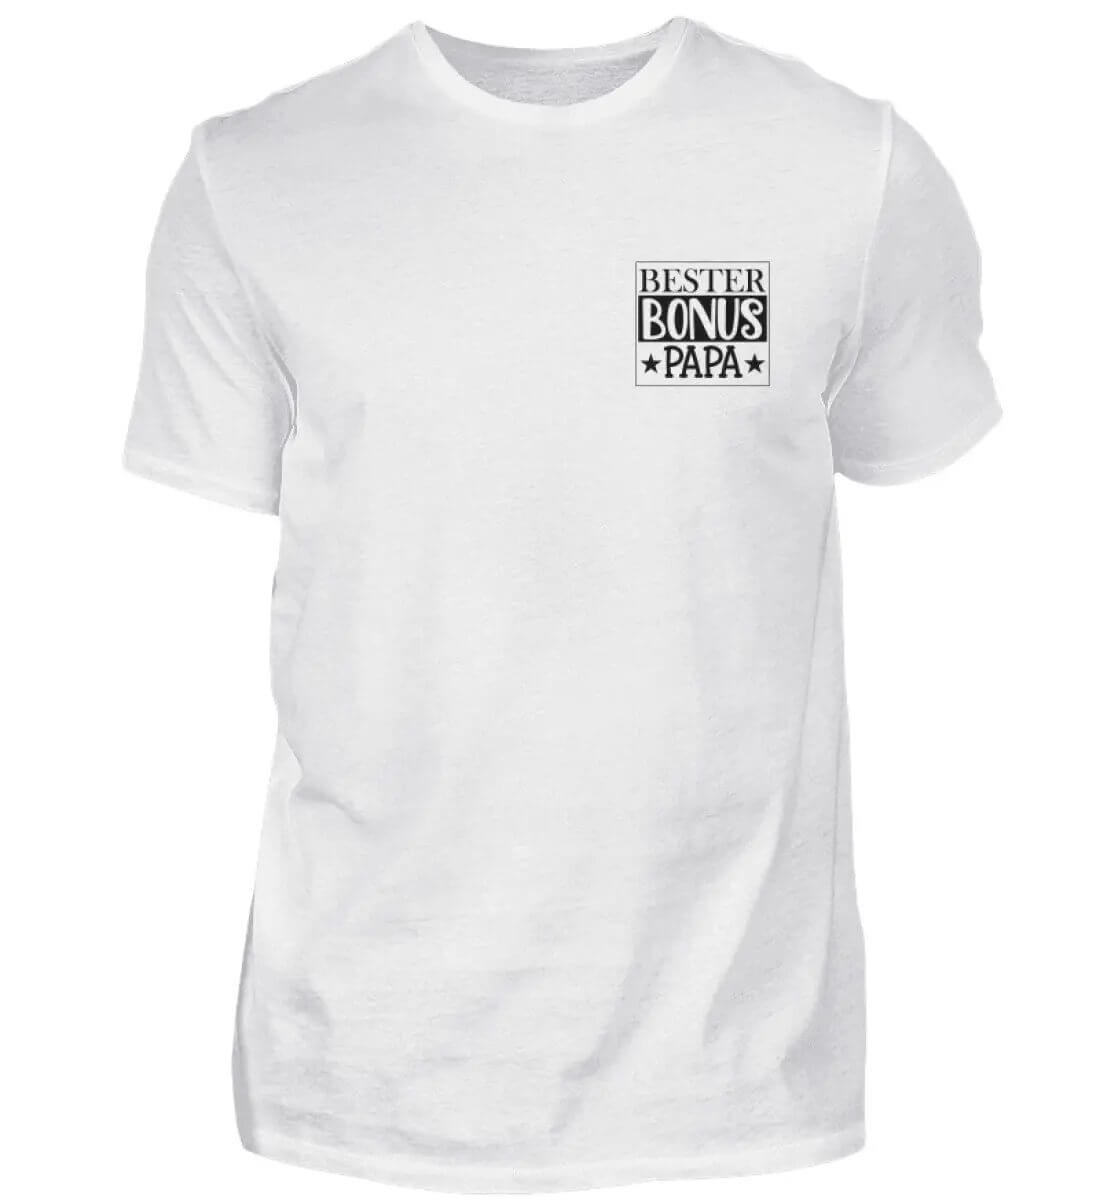 Entdecke das "Bester Bonus Papa" Unisex Shirt - perfekte Geschenkidee für Stiefväter! Einzigartiges Spruchlogo, hochwertige Qualität.